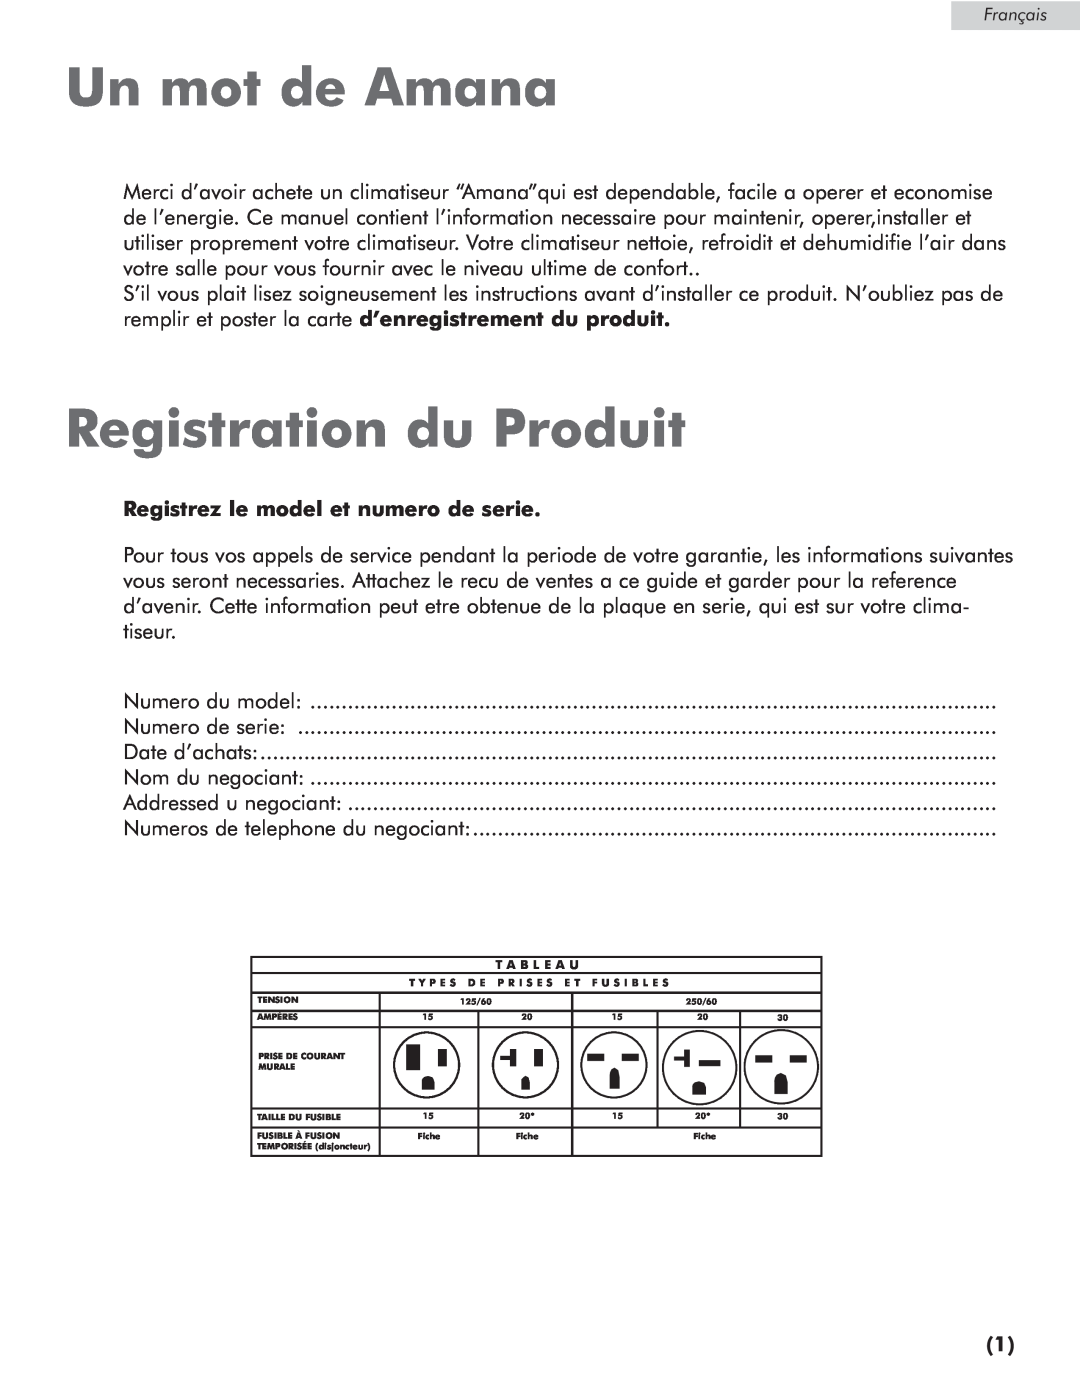 Amana AP076E manual Un mot de Amana, Registration du Produit, Registrez le model et numero de serie 